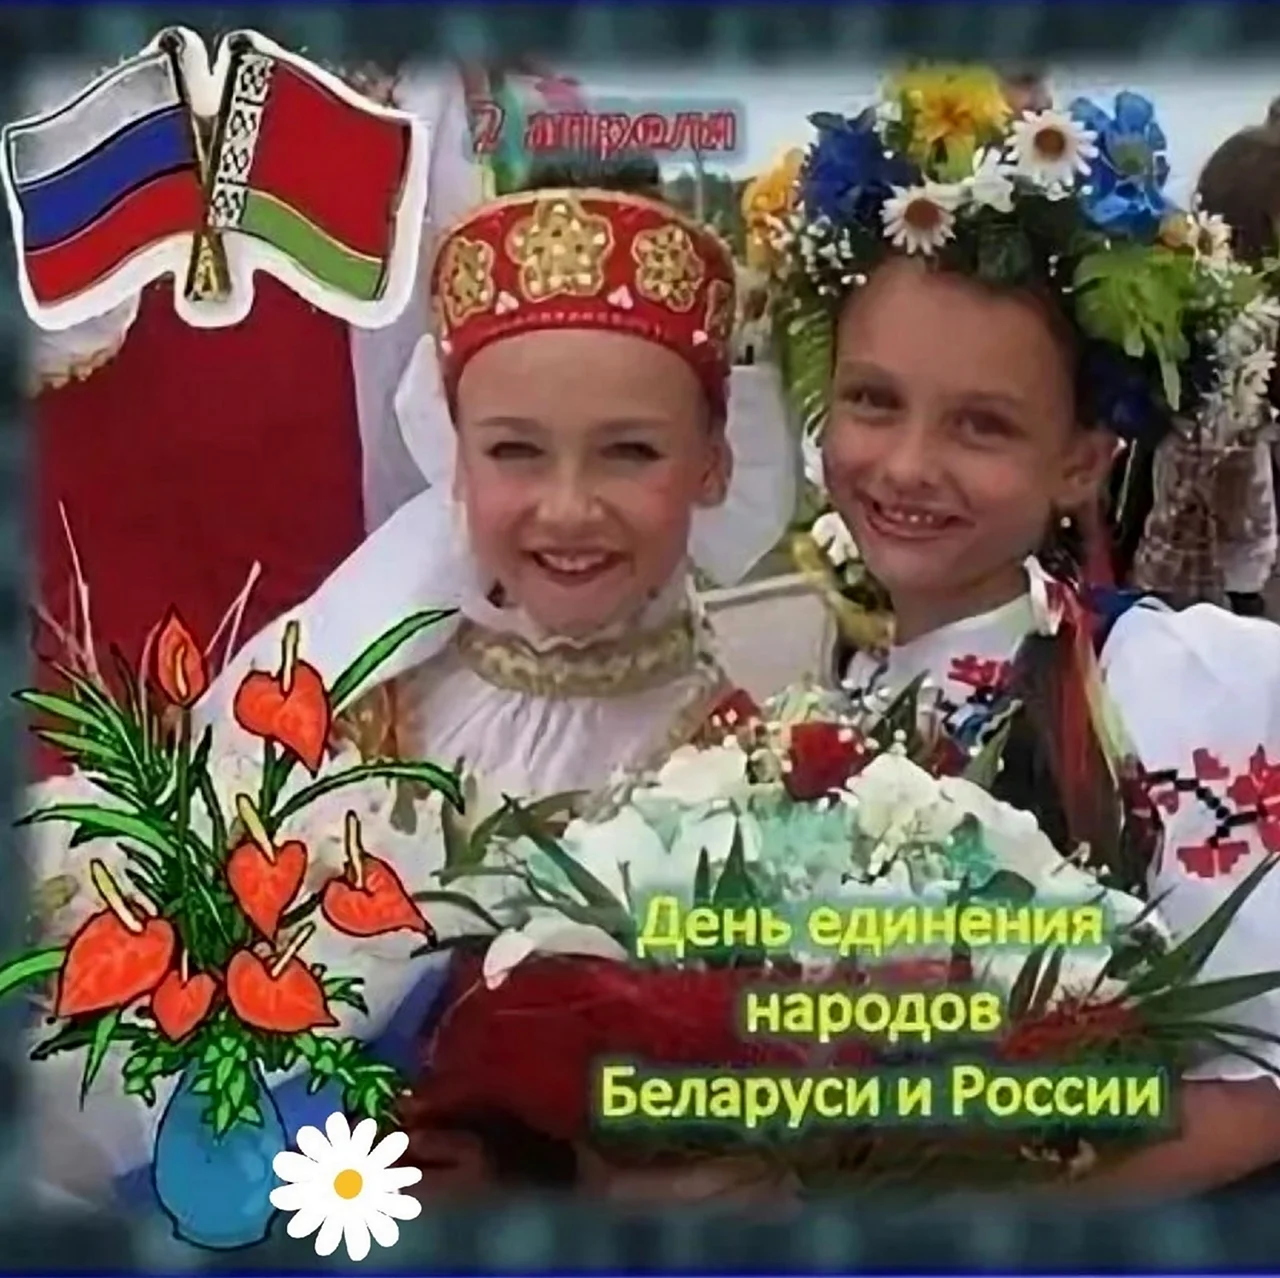 Открытки с днём единения народов России и Беларуси. Поздравление